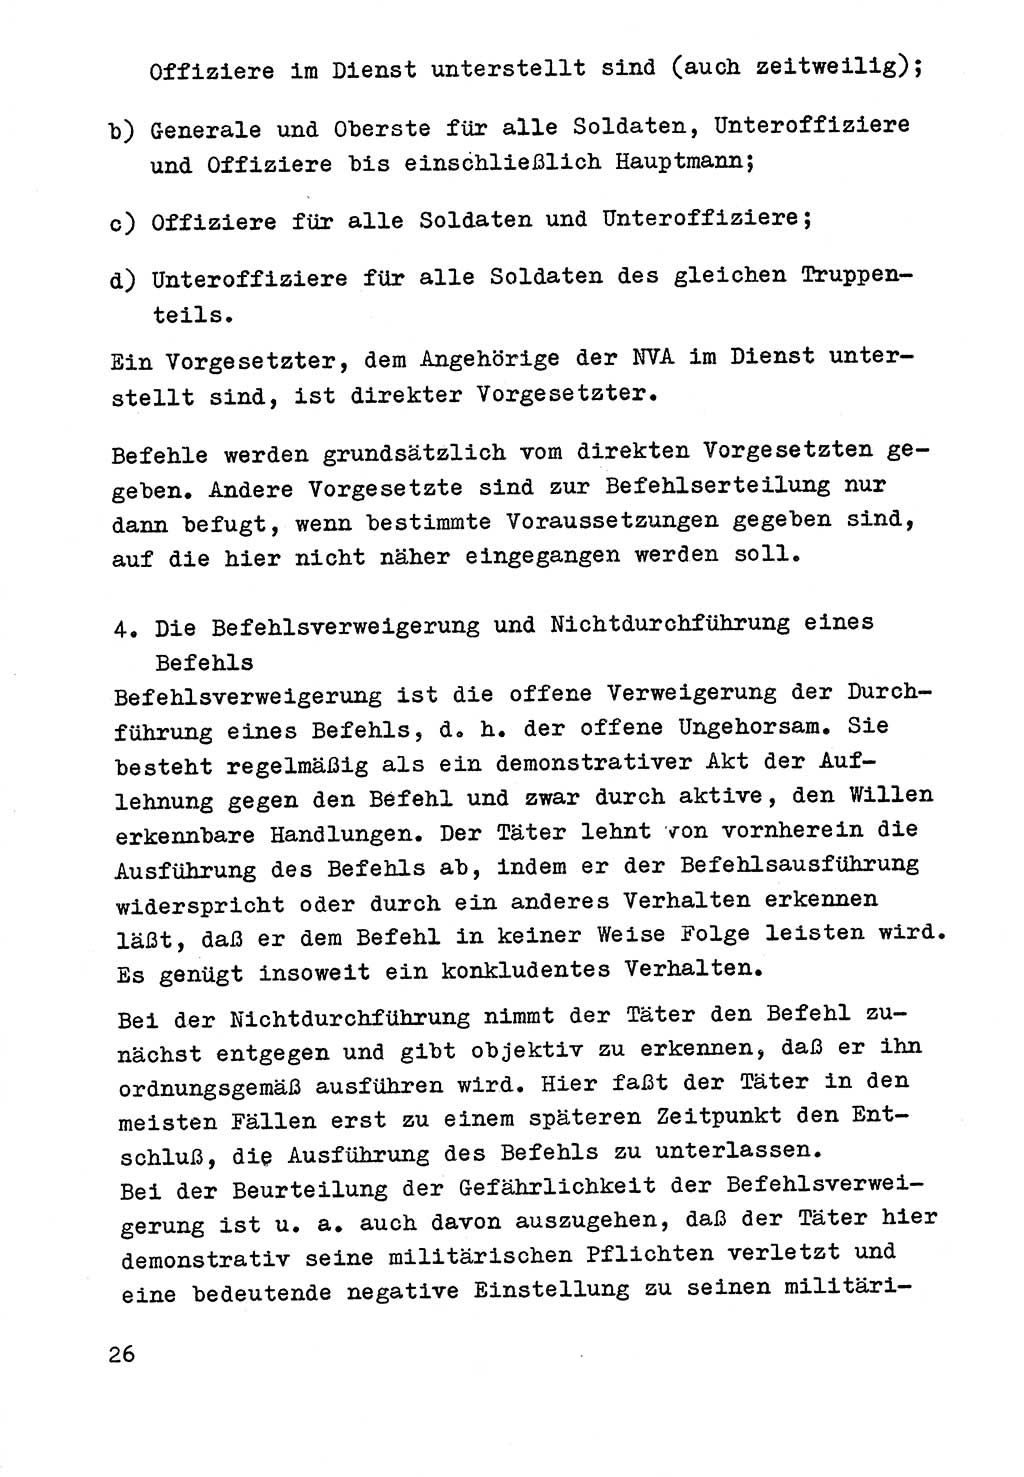 Strafrecht der DDR (Deutsche Demokratische Republik), Besonderer Teil, Lehrmaterial, Heft 9 1969, Seite 26 (Strafr. DDR BT Lehrmat. H. 9 1969, S. 26)